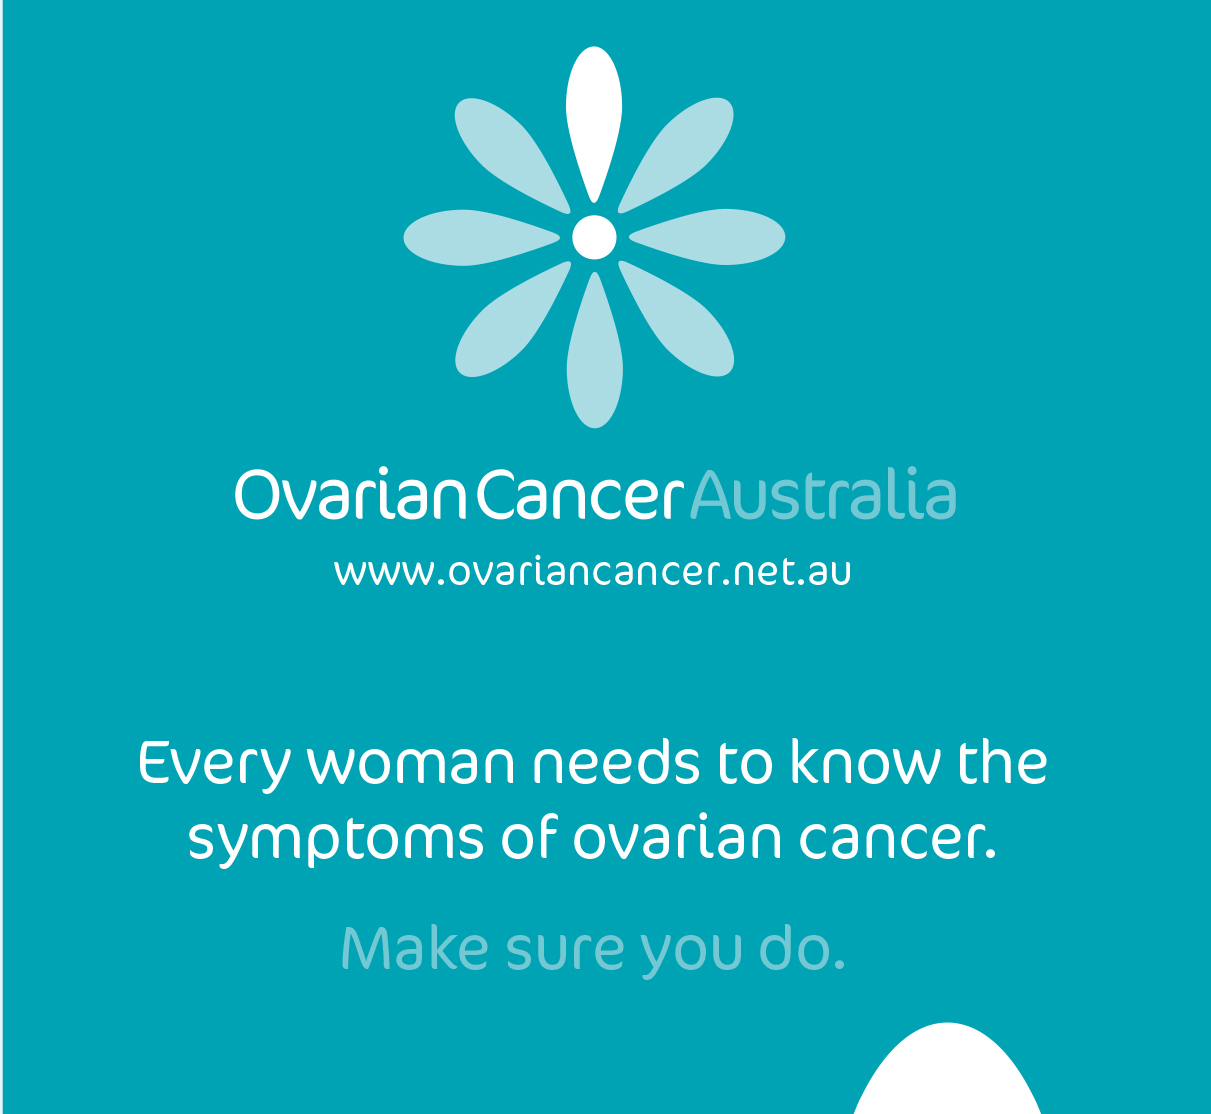 Ovarian Cancer Awareness Month